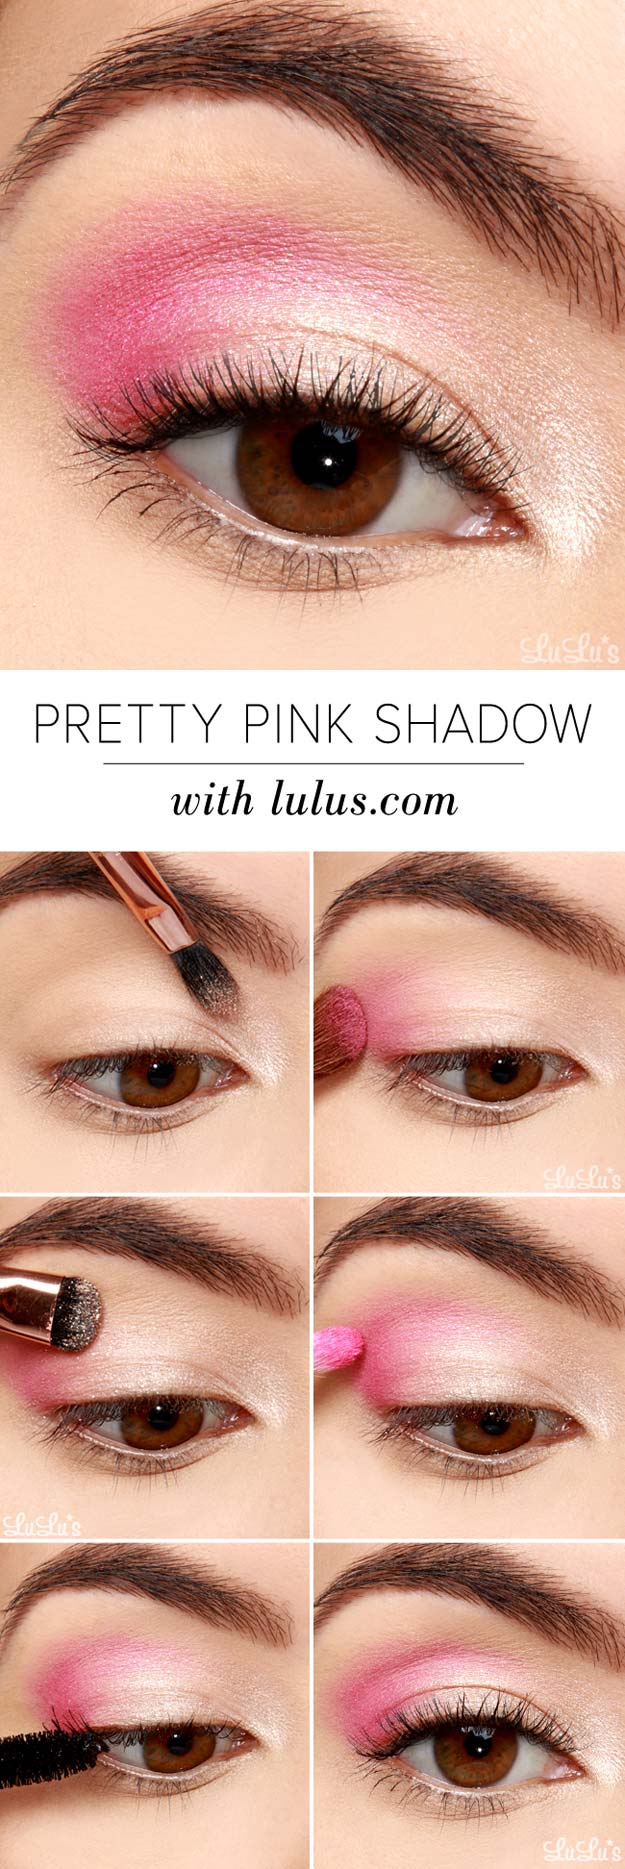 Simple Pink Eye Makeup 25 Best Eyeshadow Tutorials Ever Created